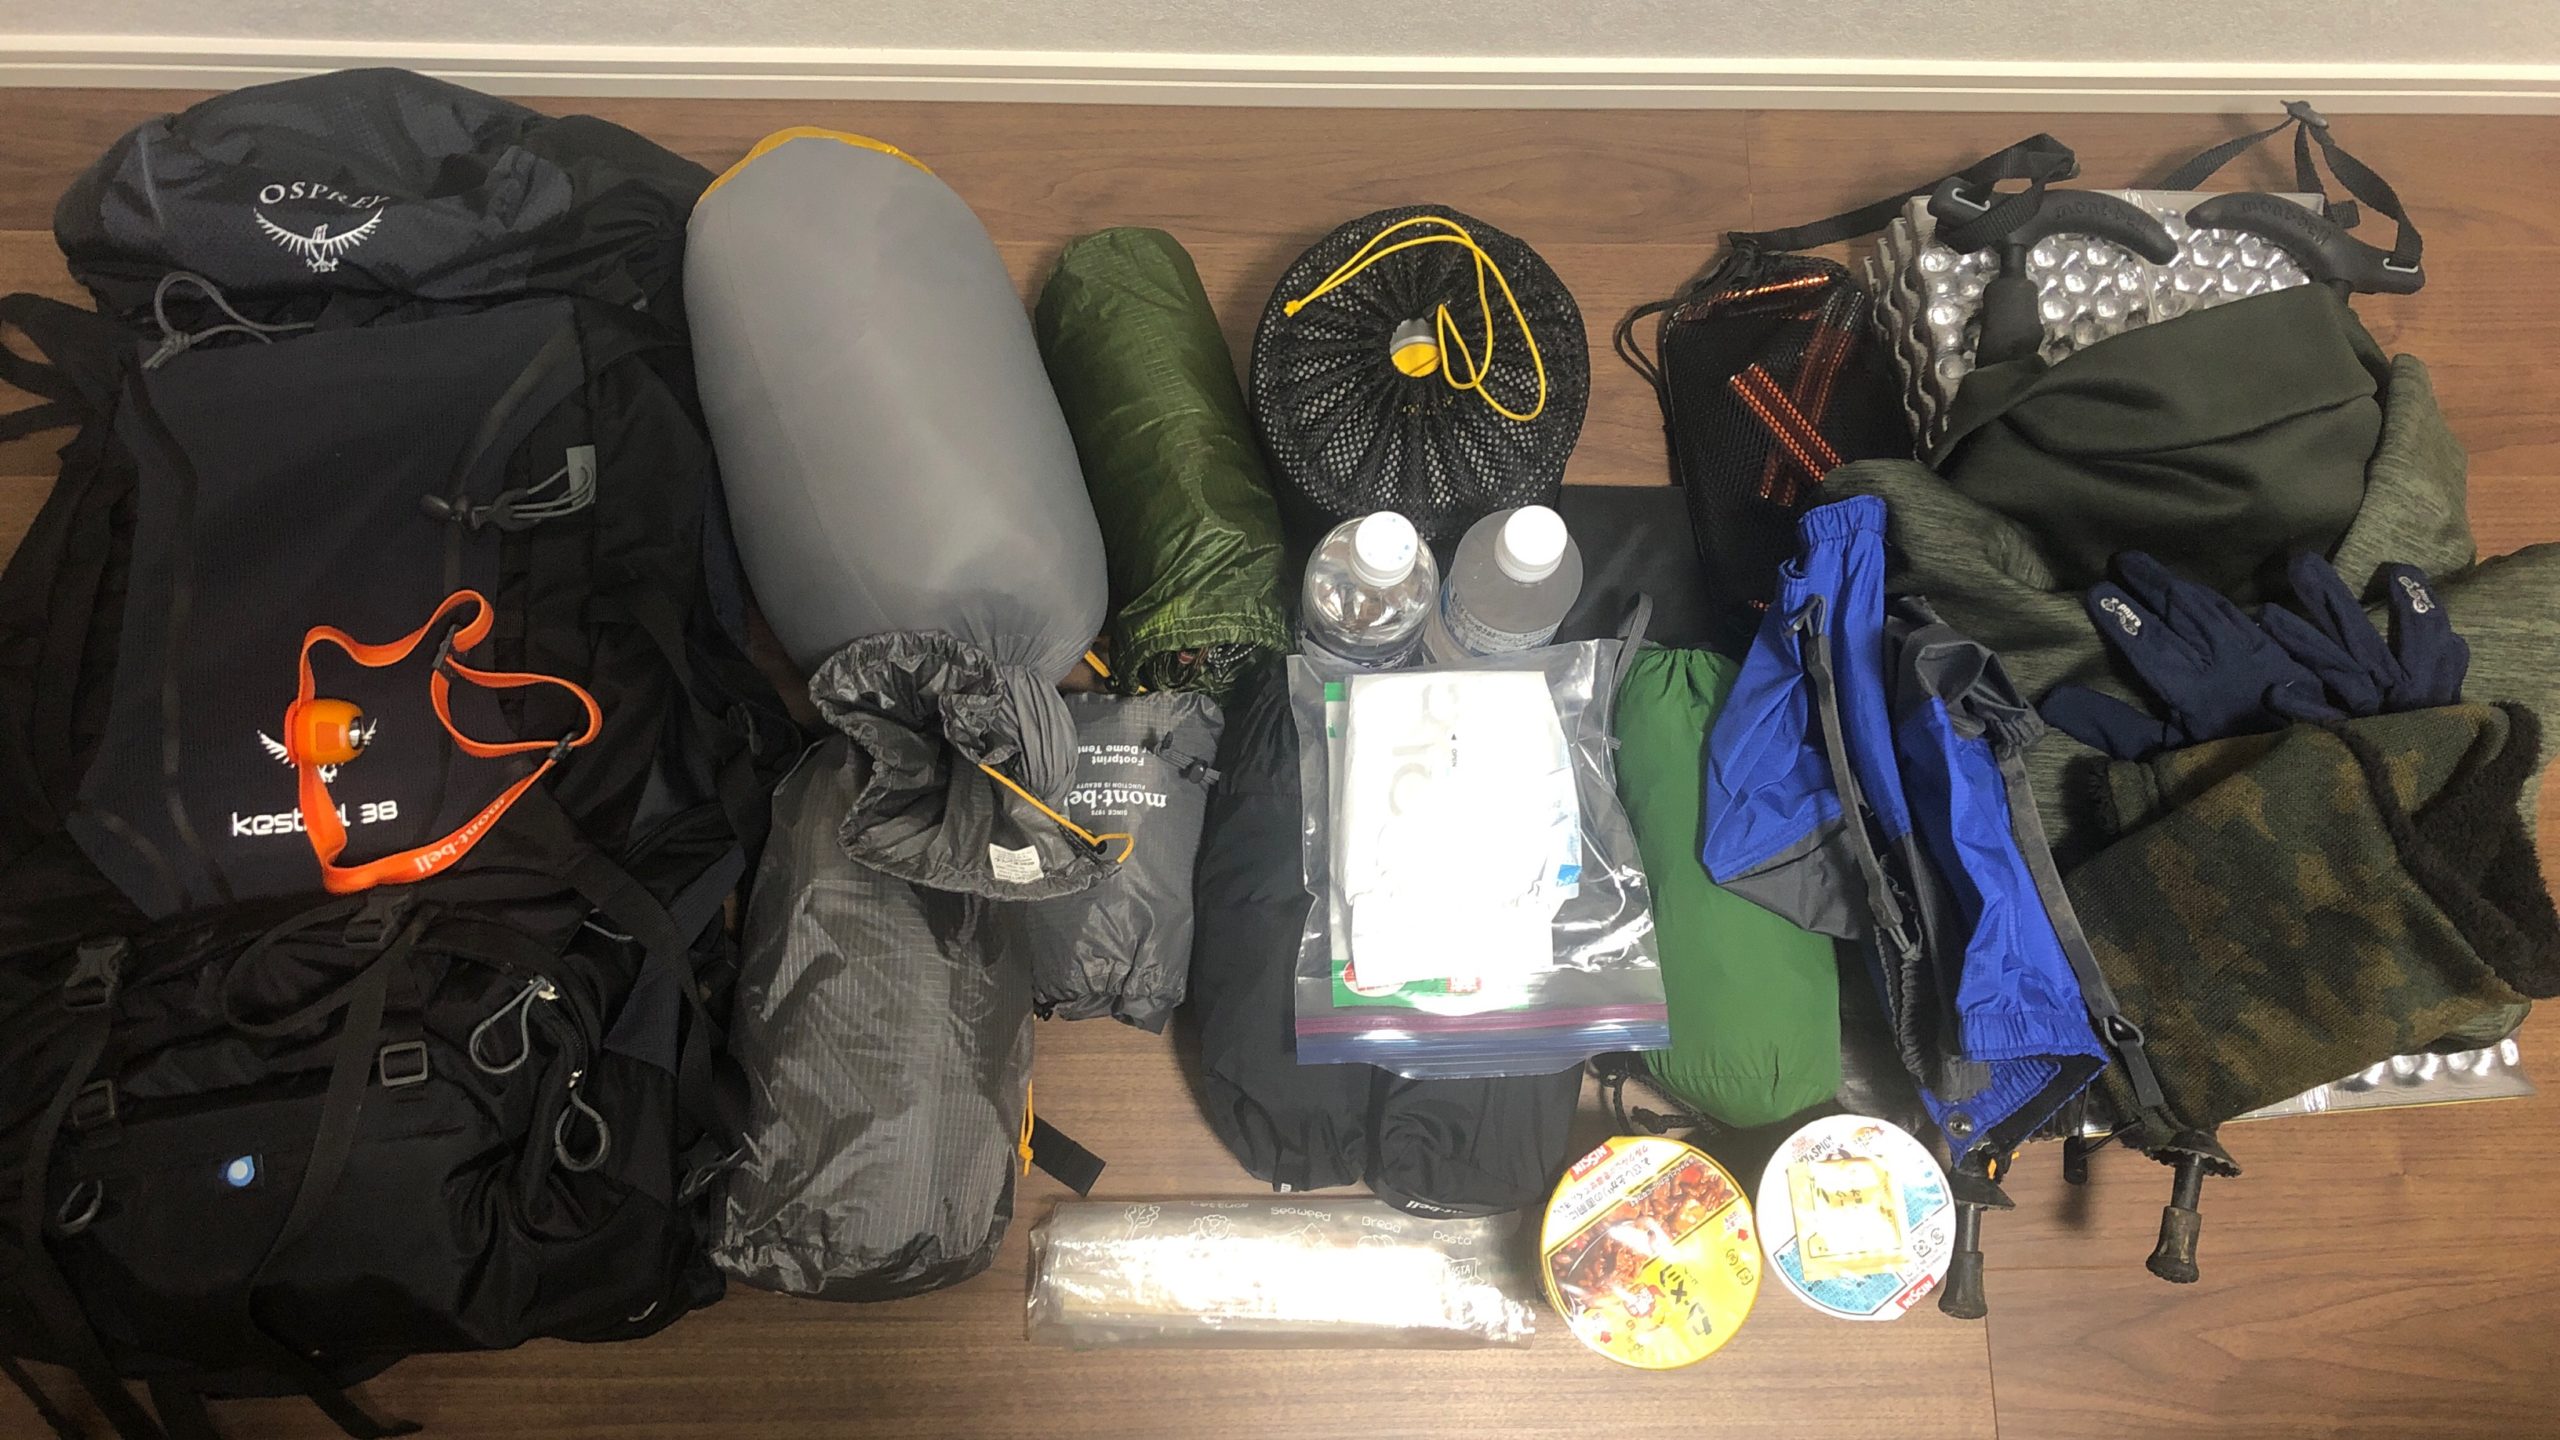 ノウハウ Osprey Kestrel38にテント泊登山の道具をパッキングしてみた まるレジャ レジャーライフをサポートする耳より情報